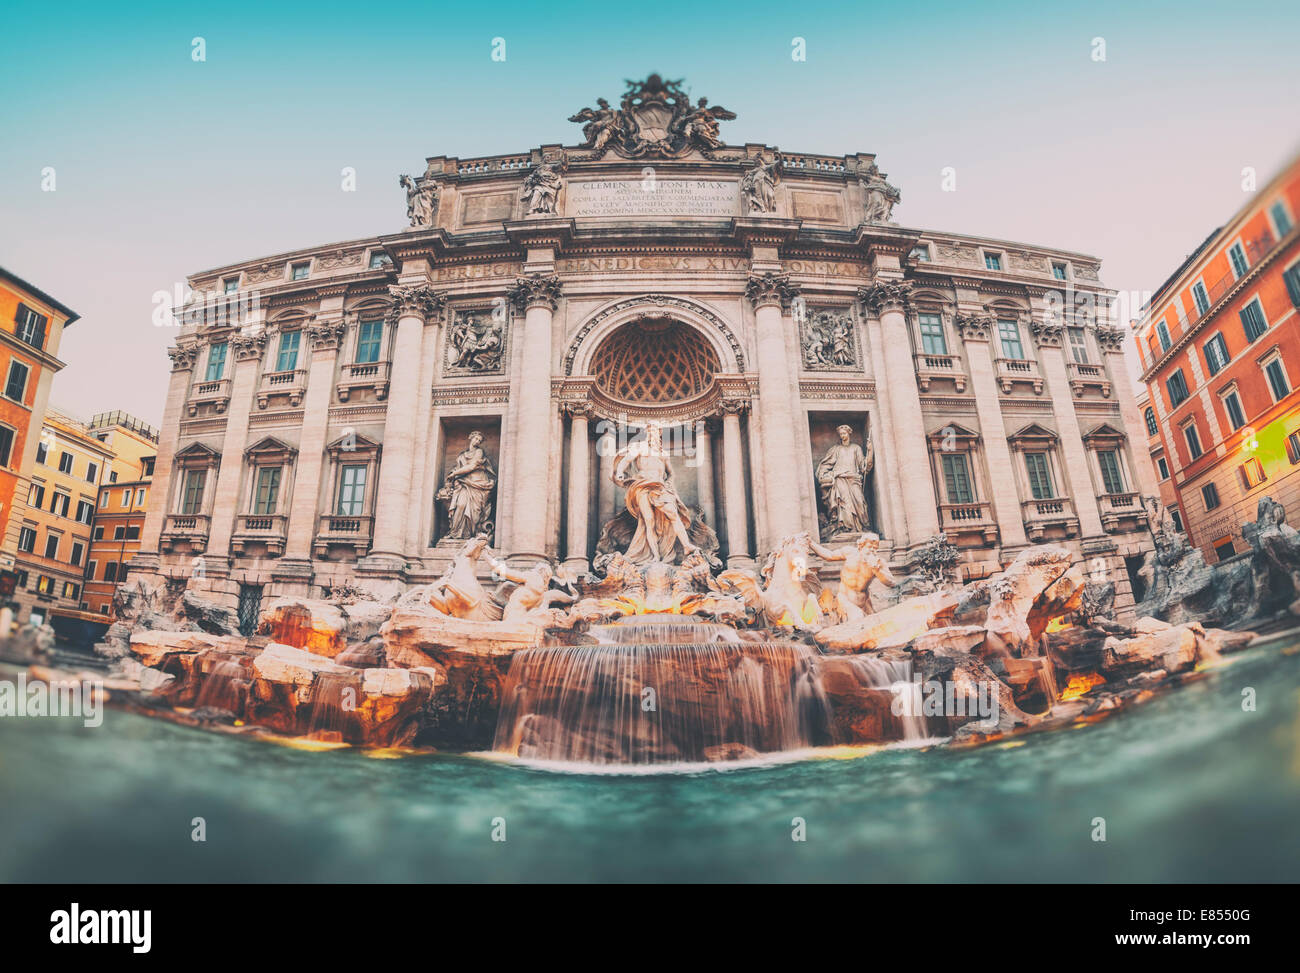 Style vintage photo de la fontaine de Trevi (Fontana di Trevi). Rome - Italie. Banque D'Images